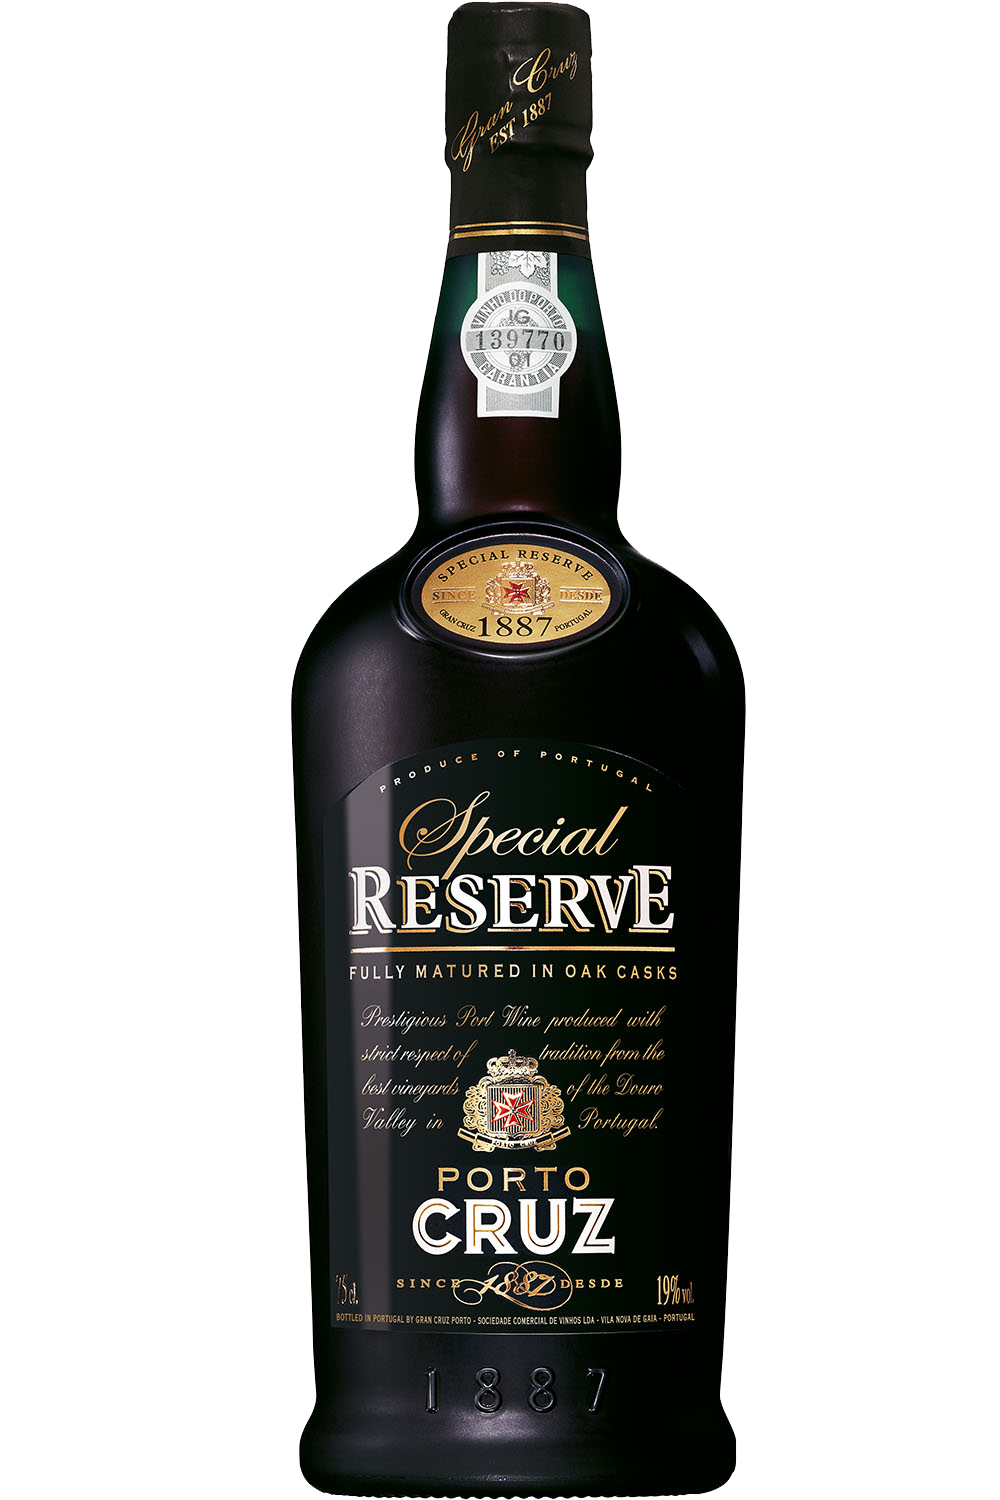 Porto CRUZ Special Reserve 